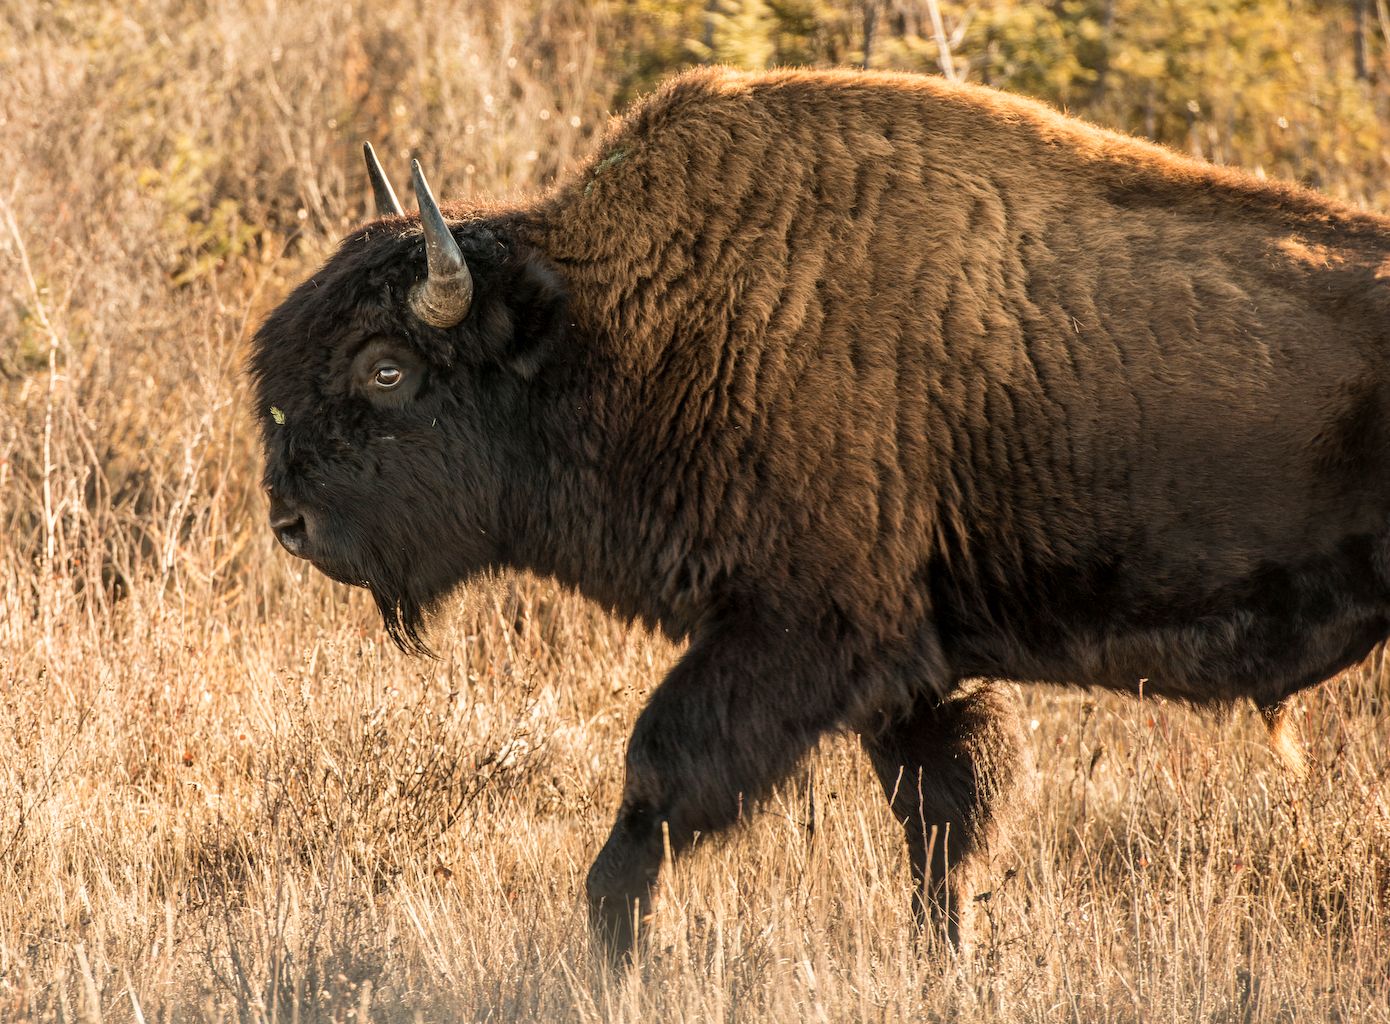 Wood buffalo, profile-view